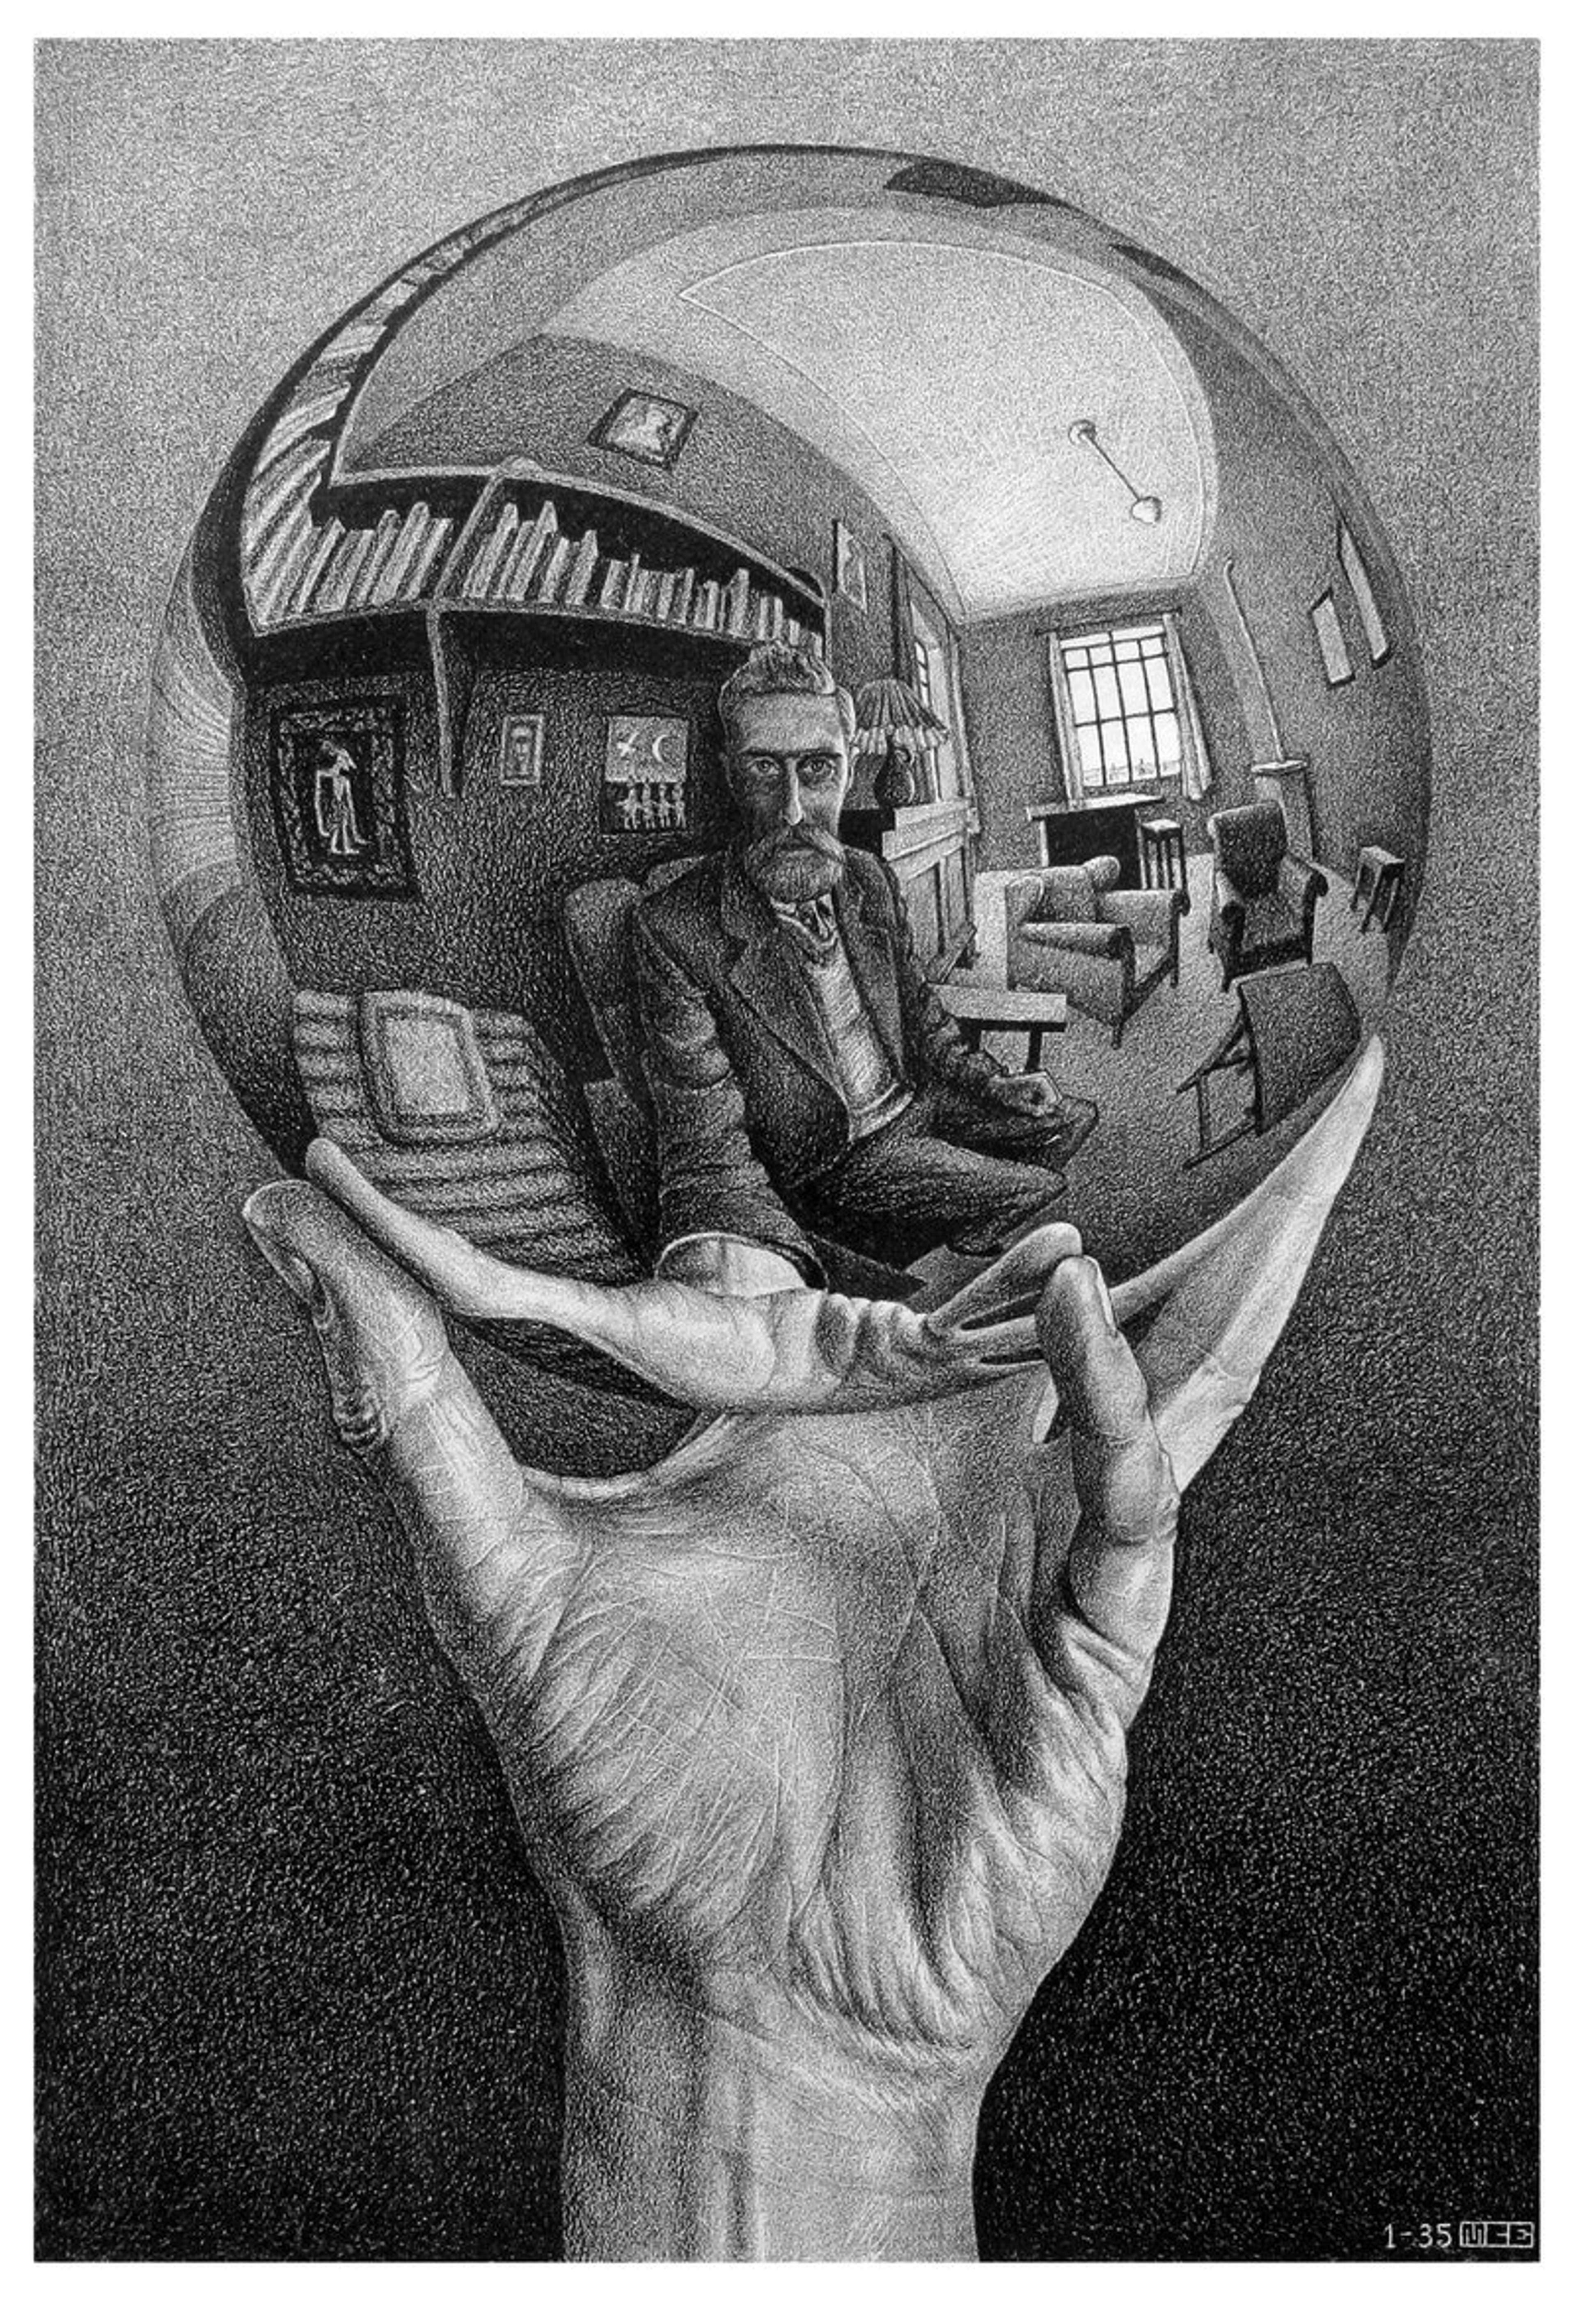 M.C. Escher's Most Famous Artworks